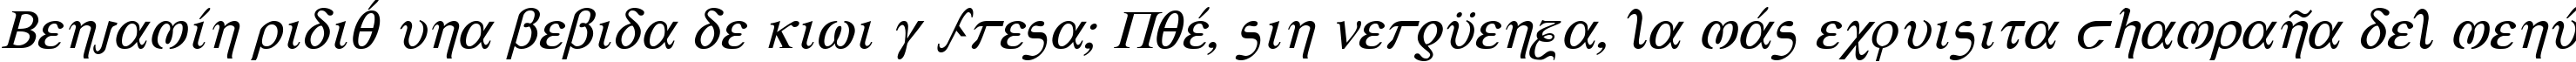 Пример написания шрифтом Achilles Italic текста на испанском